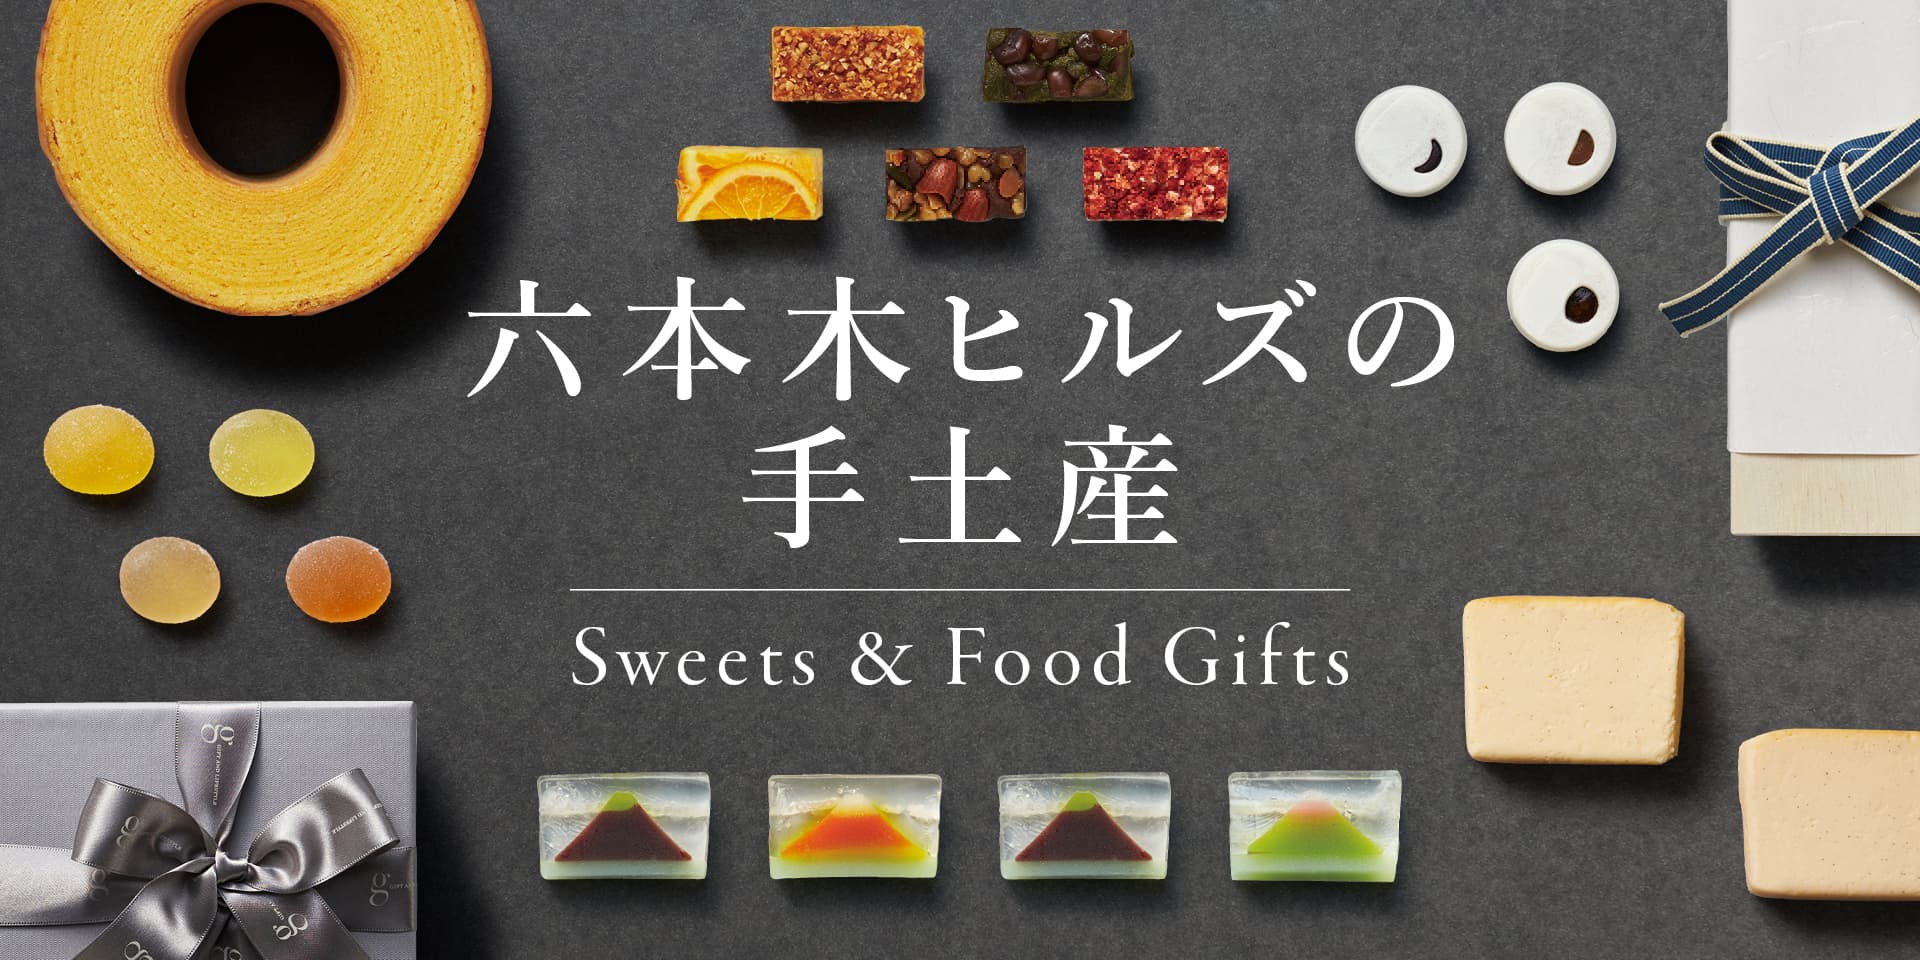 六本木ヒルズの手土産 - Sweets & Food Gifts | 六本木ヒルズ - Roppongi Hills